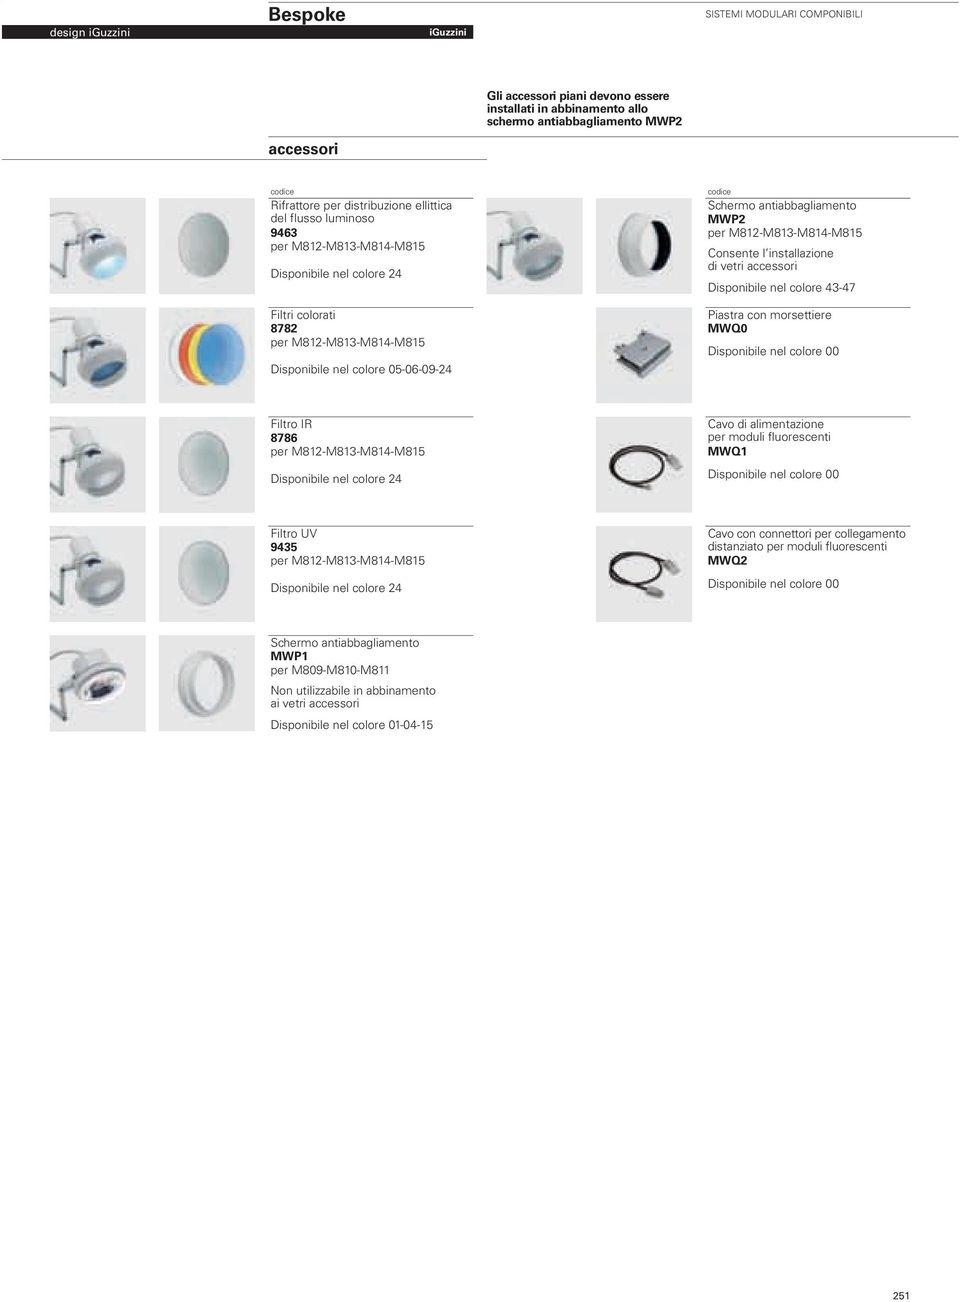 installazione di vetri accessori Disponibile nel colore 43-47 Piastra con morsettiere MWQ0 Filtro IR 8786 per M812-M813-M814-M815 Disponibile nel colore 24 Cavo di alimentazione per moduli